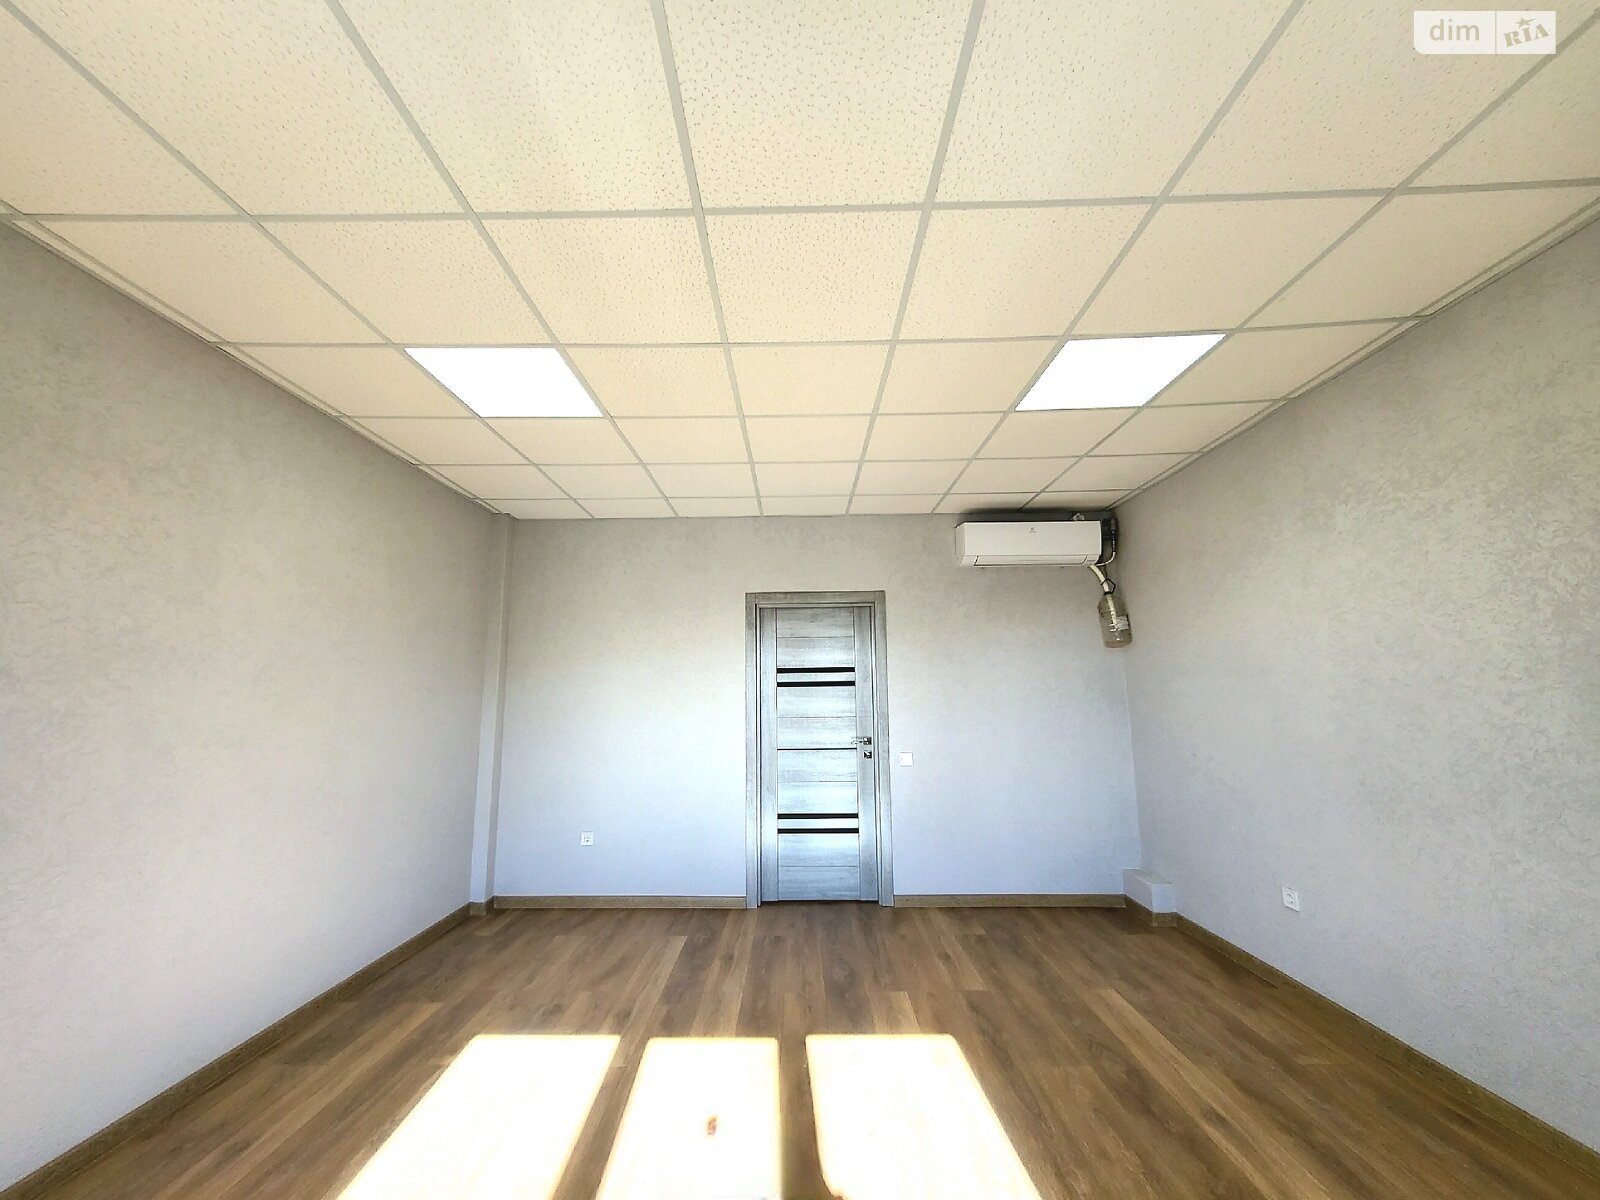 Аренда офисного помещения в Якушинцах, Хмельницьке шосе, помещений - 7, этаж - 2 фото 1